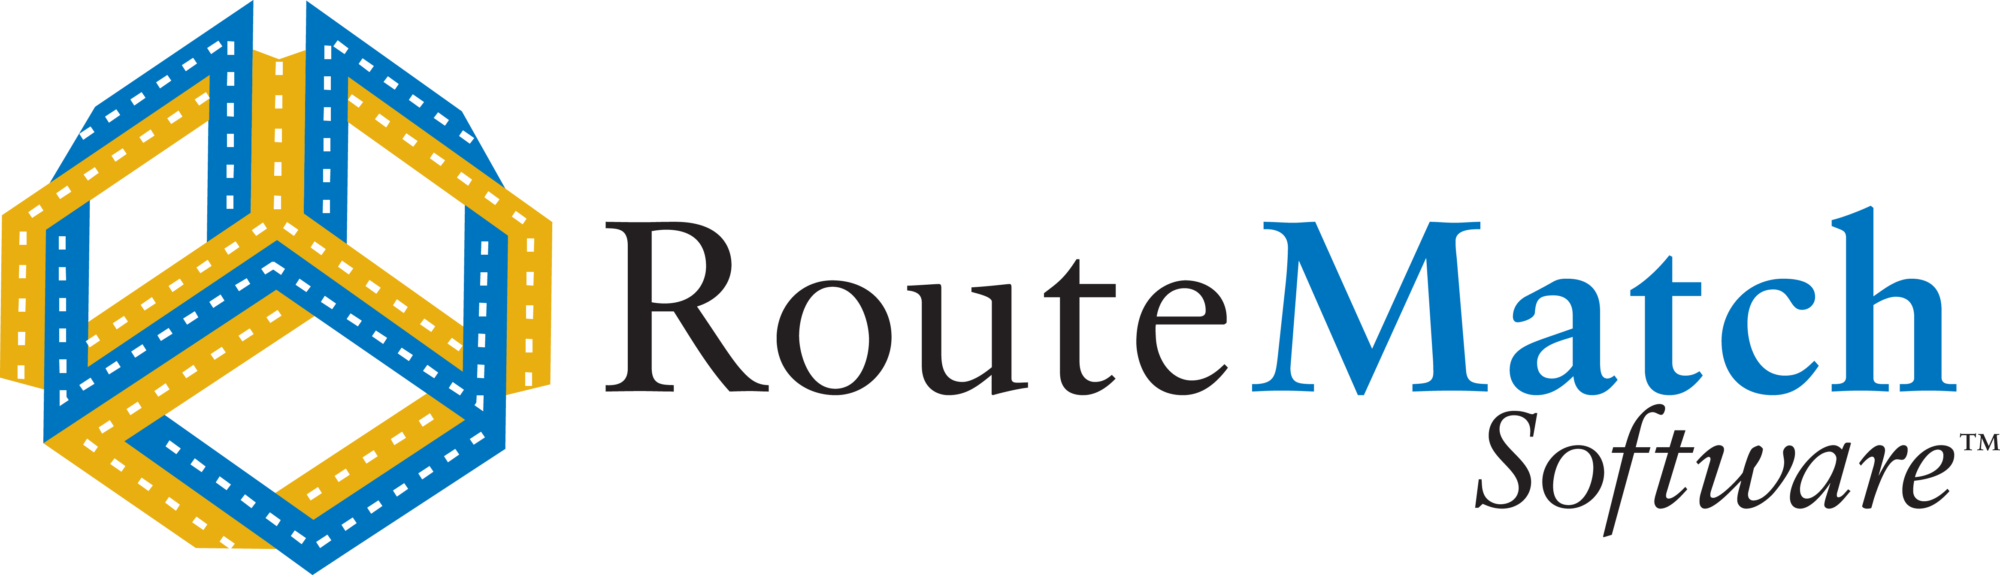 routematch logo